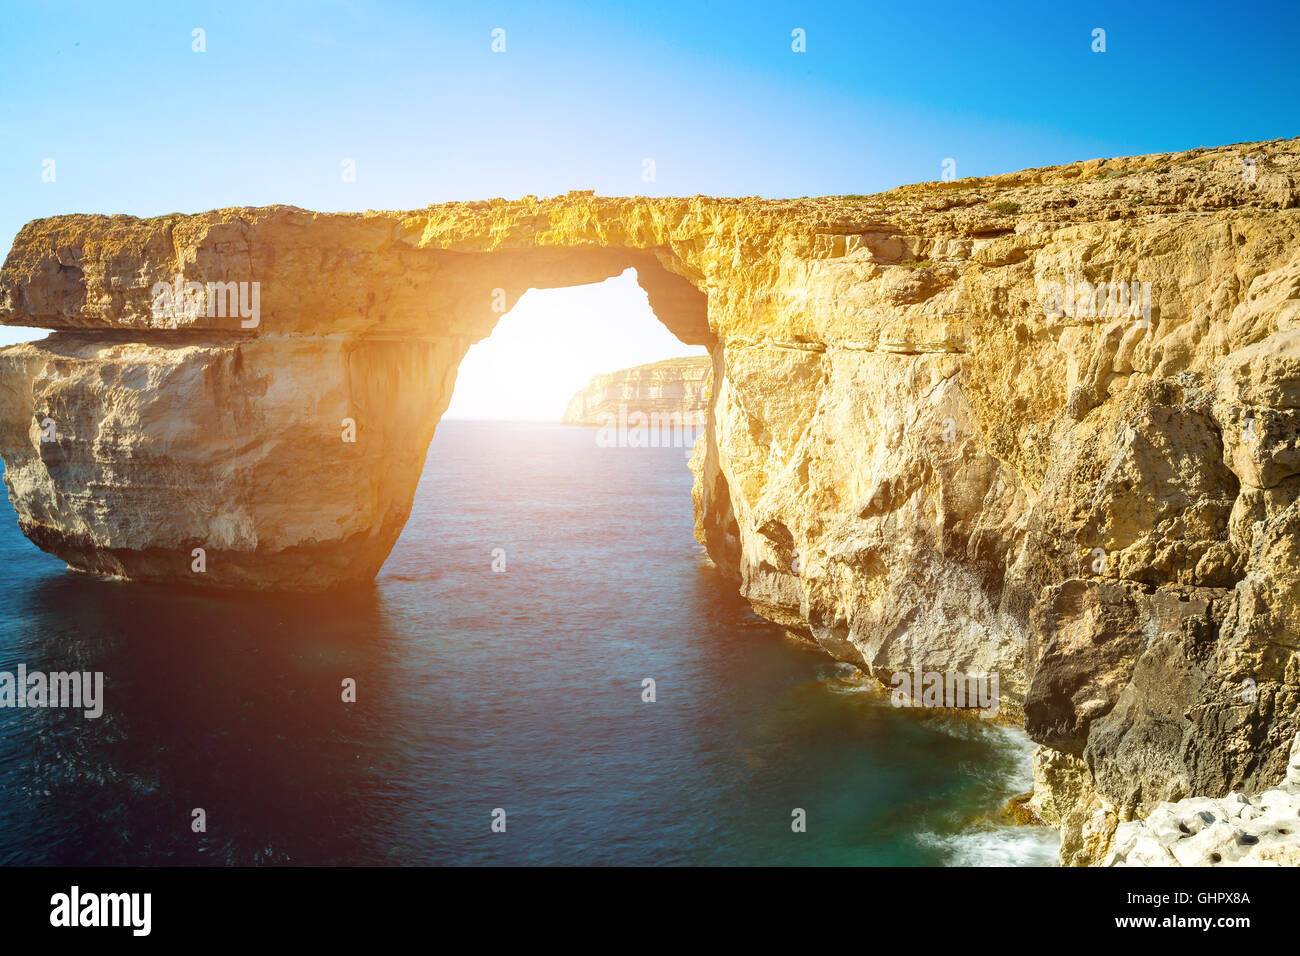 Azure Window, Naturale, Wahrzeichen und beliebten touristischen Ort auf der Insel Gozo, Malta Stockfoto